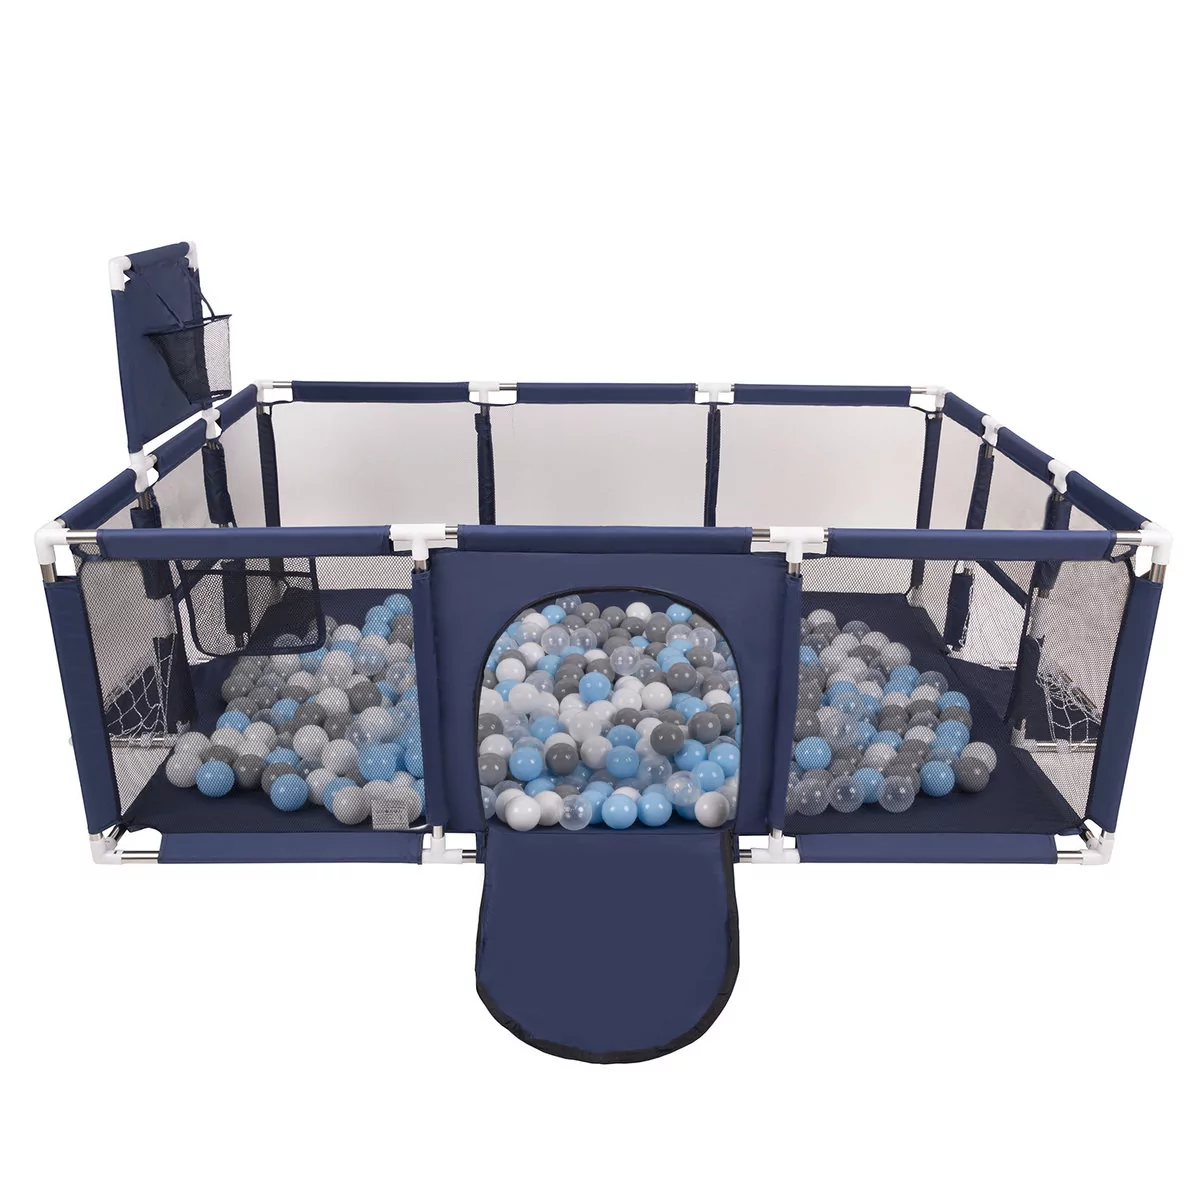 Selonis Kojec dla niemowląt duży plac zabaw ze 100 piłkami kojec dla dzieci, ciemnoniebieski:Grey/White/Transparent/Babyblue